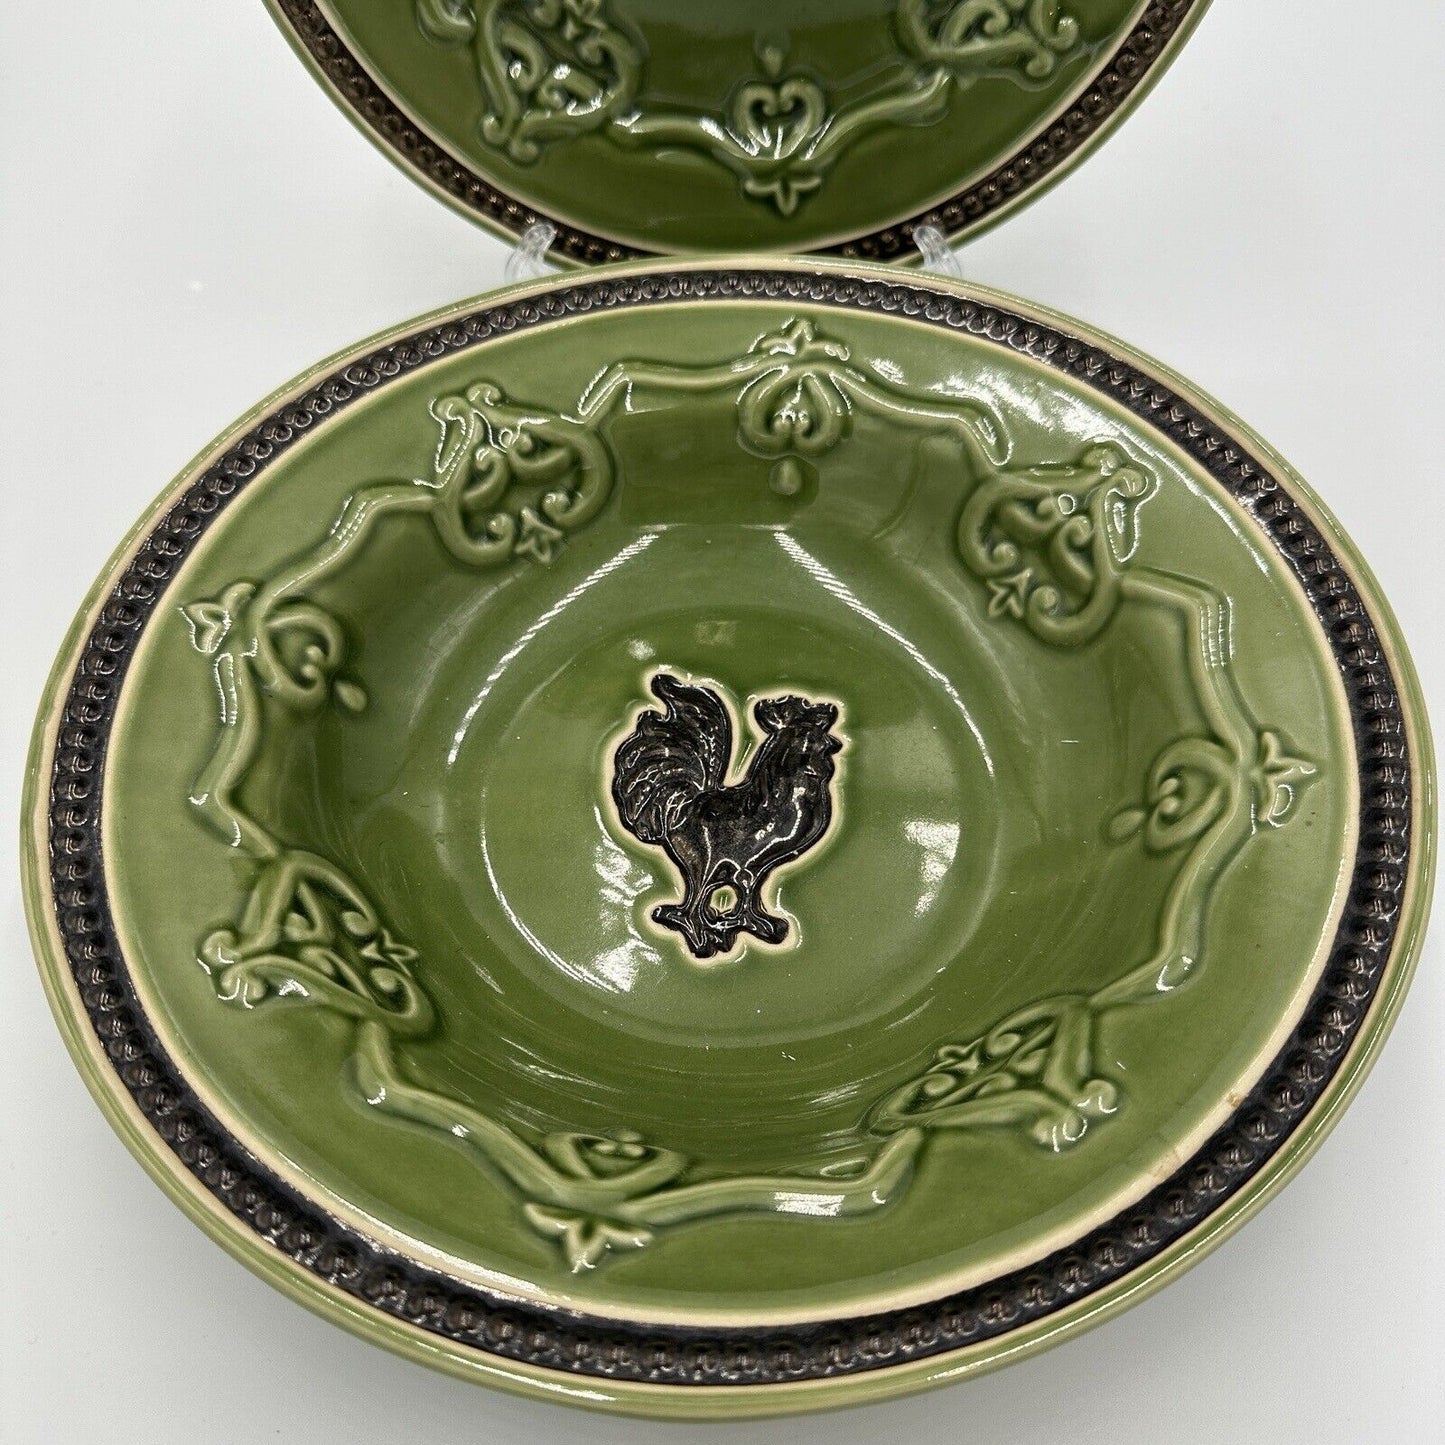 Cracker Barrel Bowl and Plate Set Elegant Rooster Green 9 5/8" X 2" Rimmed